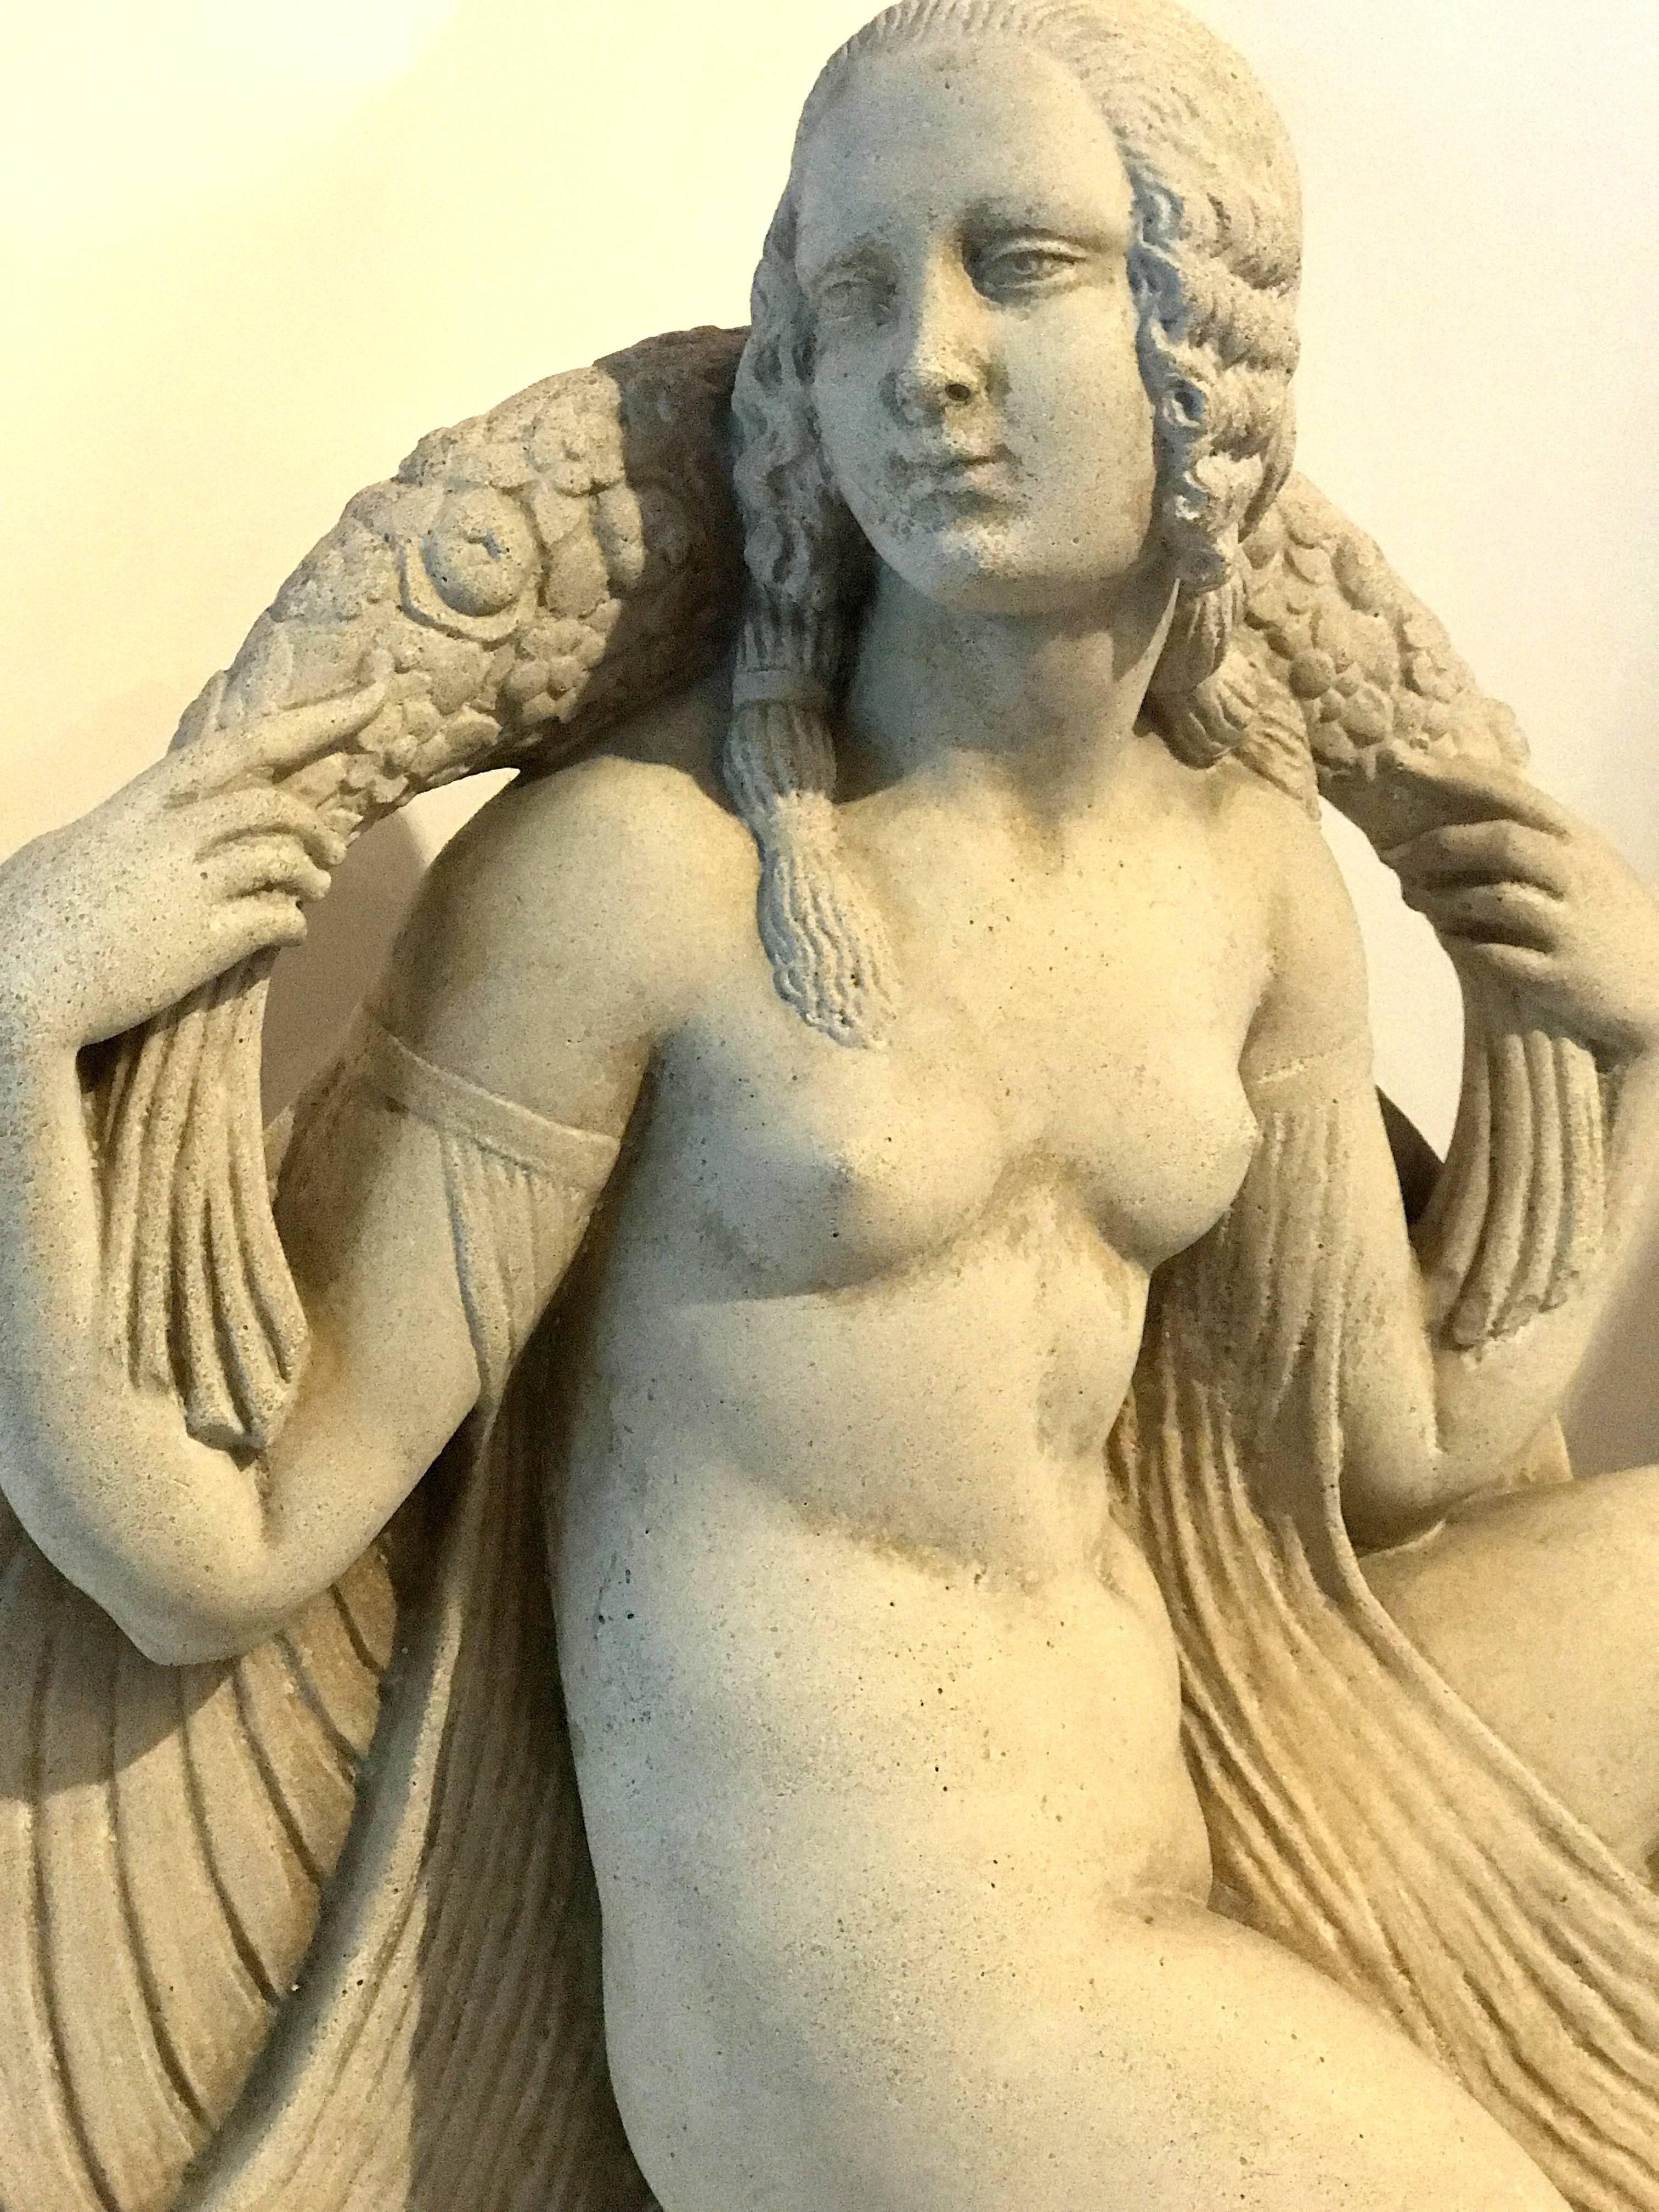 Sculptée dans la pierre, une belle femme nue de style Art déco français avec des détails floraux et des drapés en tissu, signée Joe Descomps, datée sous la base, 11-6-26, 11 juin 1926.